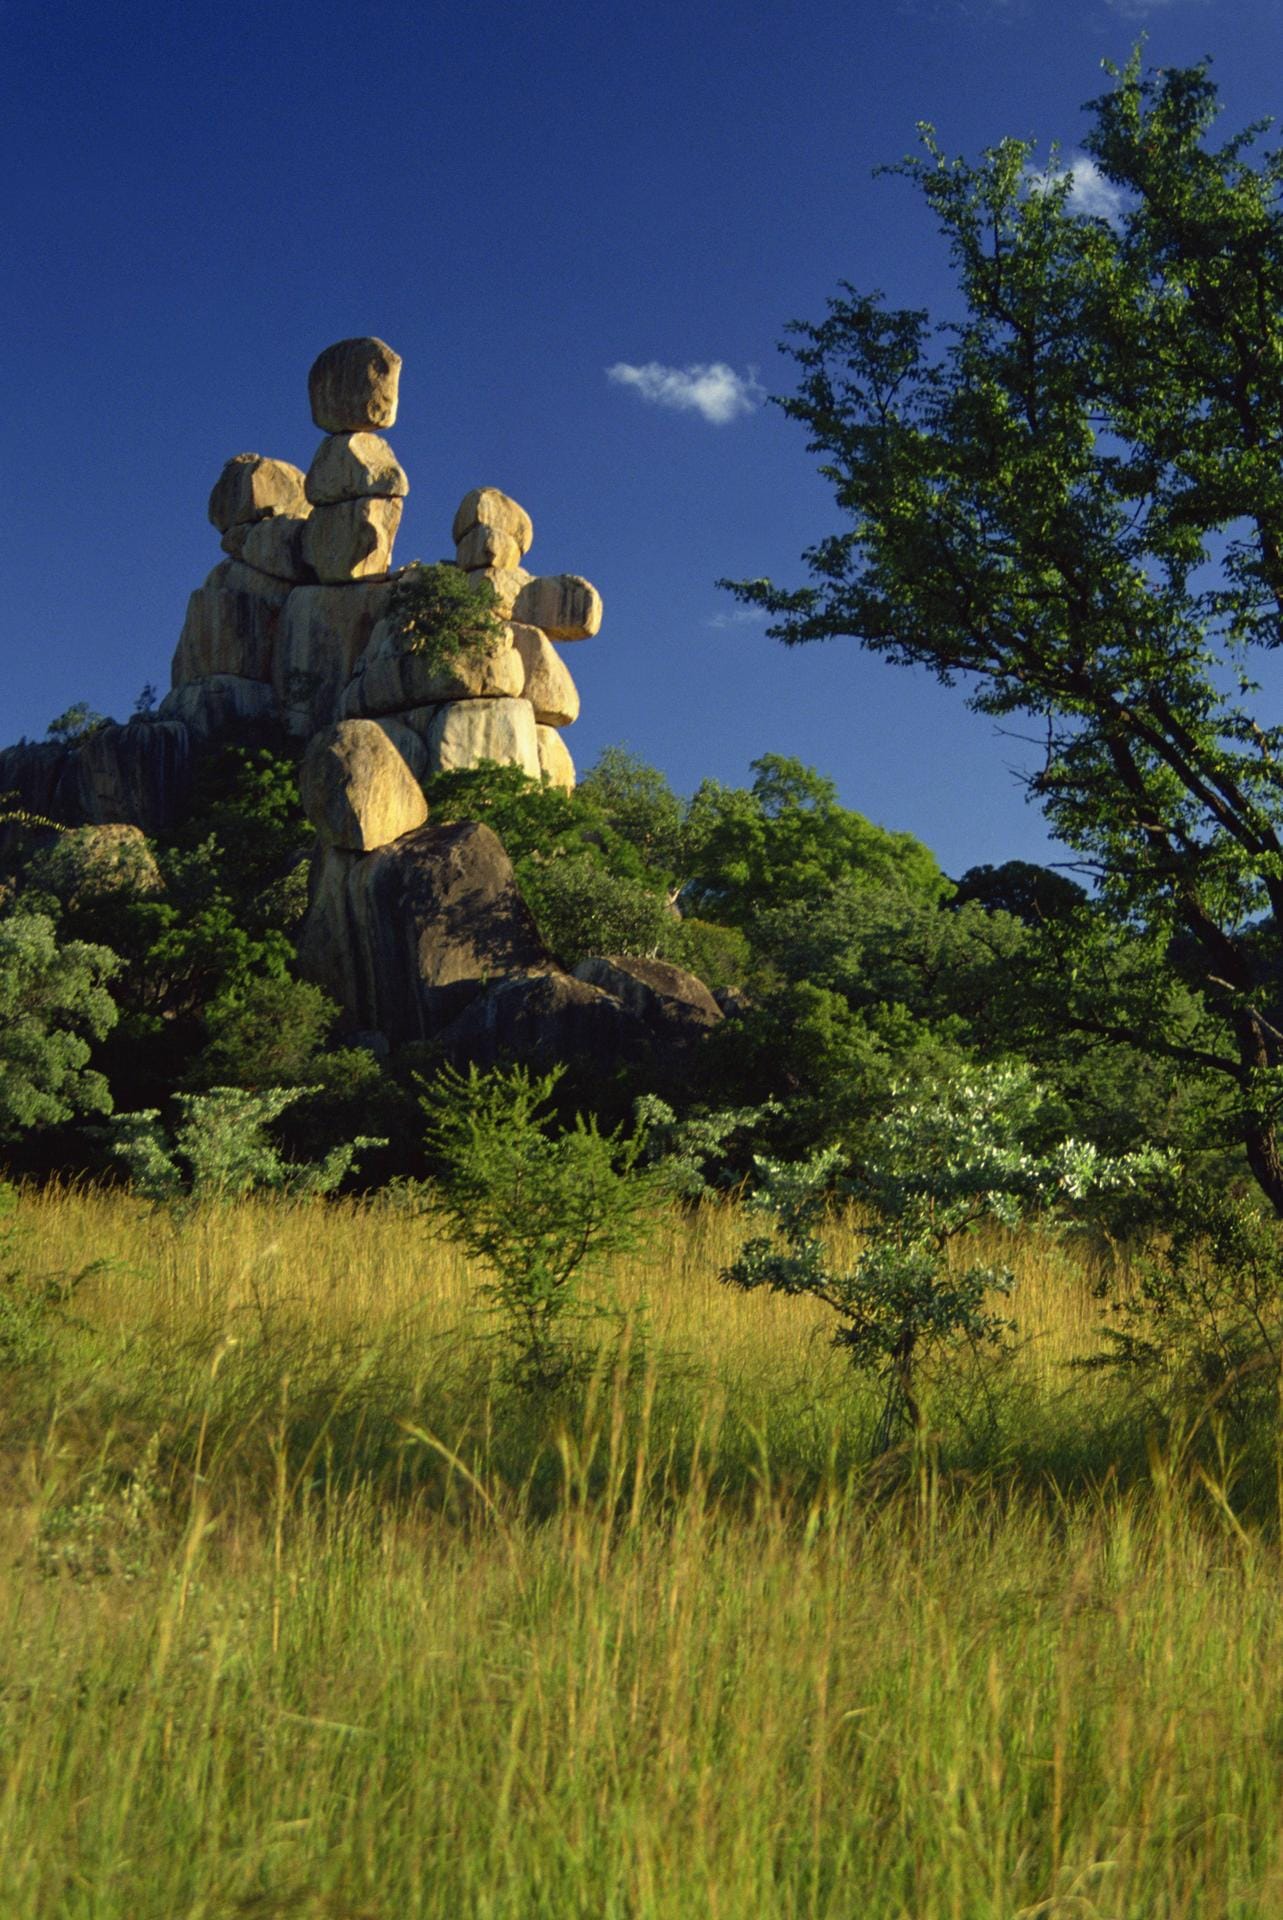 Fantasieanregend sind auch die Formationen in Simbabwes Matobo Nationalpark. Auf dem Foto zu sehen ist ein Felsen, der stark an eine Mutter mit Kind erinnert ("Mother and Child rock").